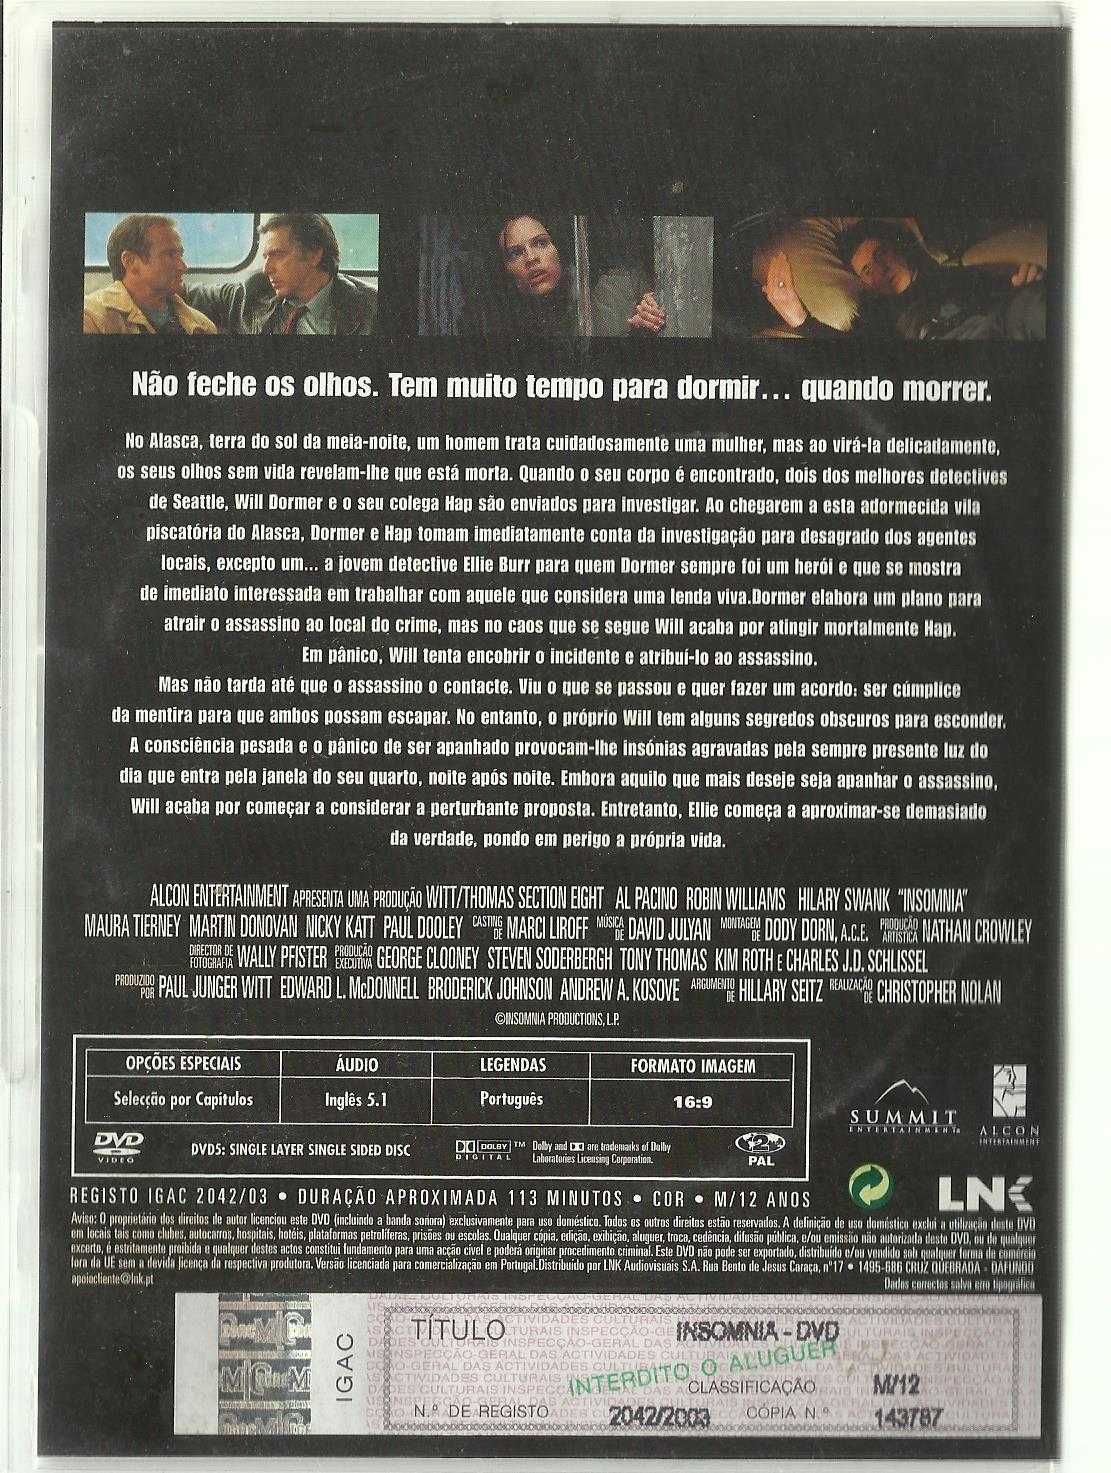 FILMES - 3 DVD originais com selo do IGAC